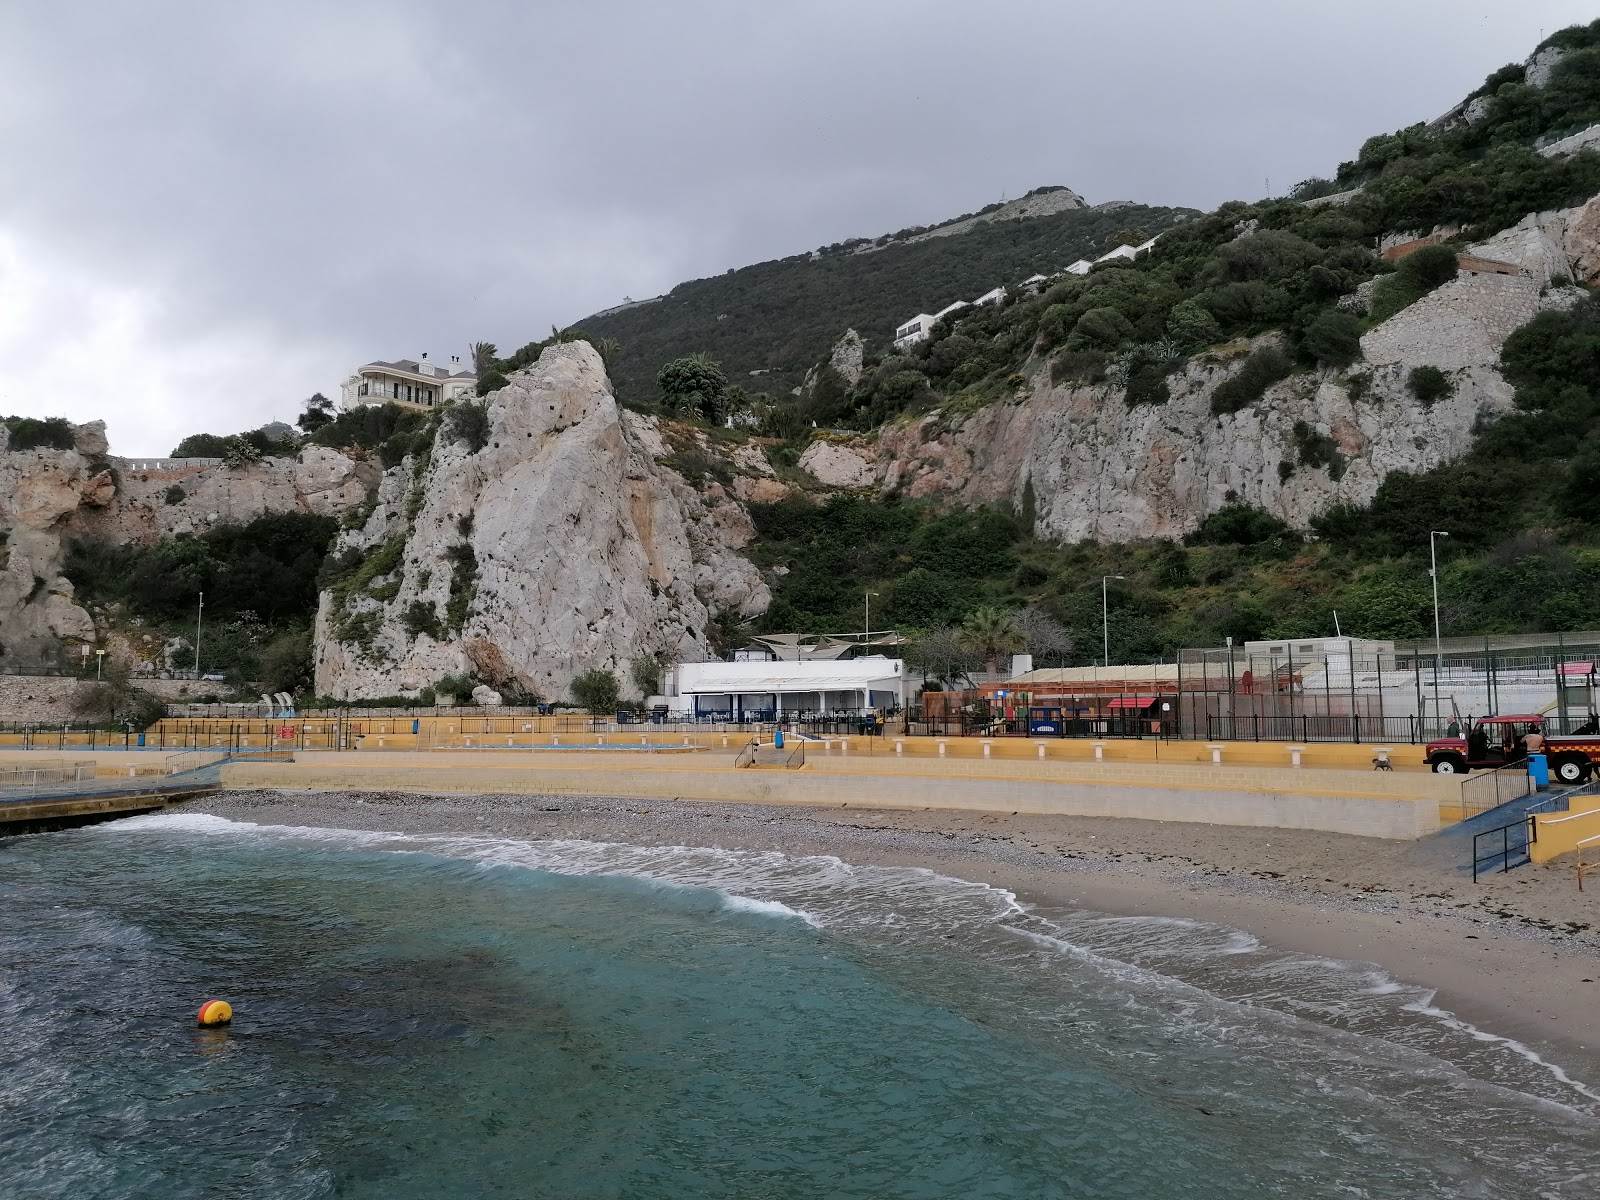 Fotografie cu Camp Bay Beach, Gibraltar cu golfuri mici